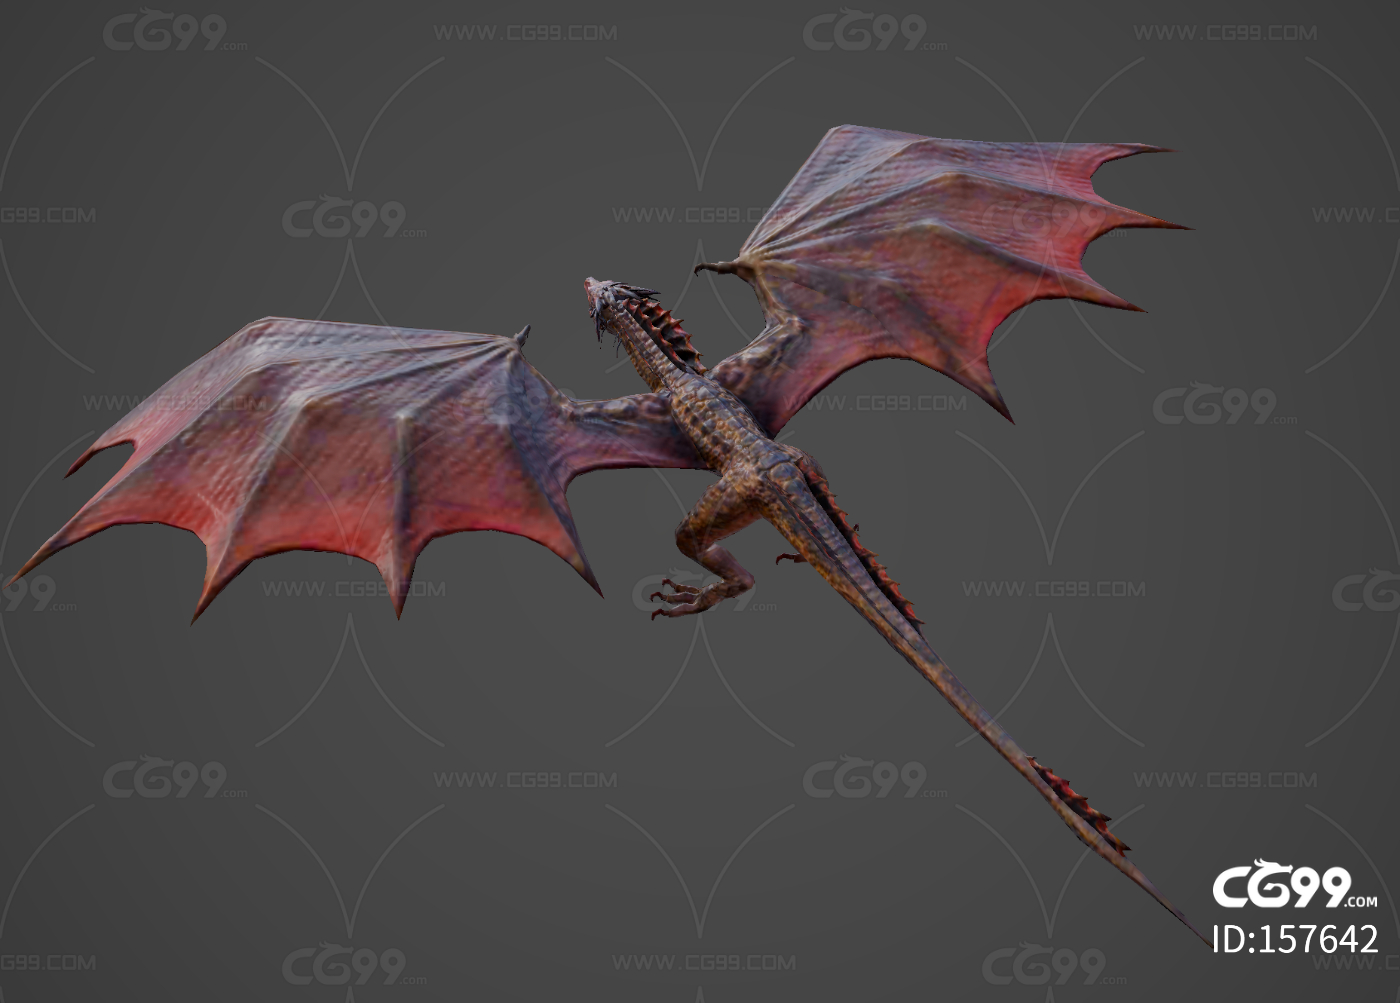 西方飞龙 神话龙 次世代模型飞龙 龙 巨龙 龙族守护者 龙怪-cg模型免费下载-CG99